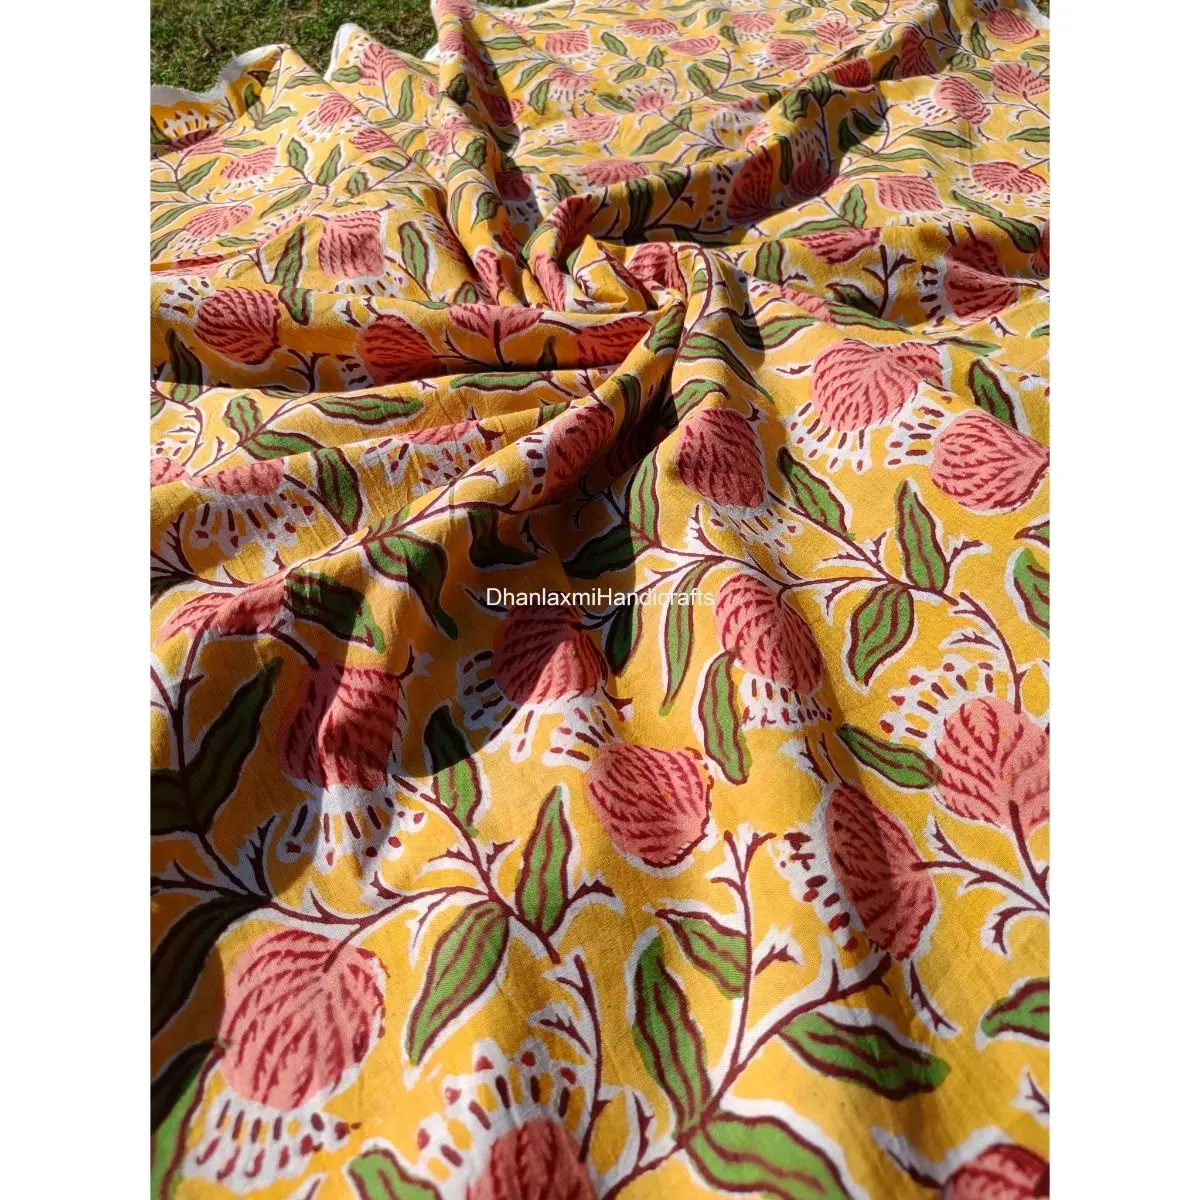 Mehrfarbiger Großhandel Laufs toff Indisches Tuch Textil 100% Baumwolle Kleidungs stück Material Blumen Hand block druck